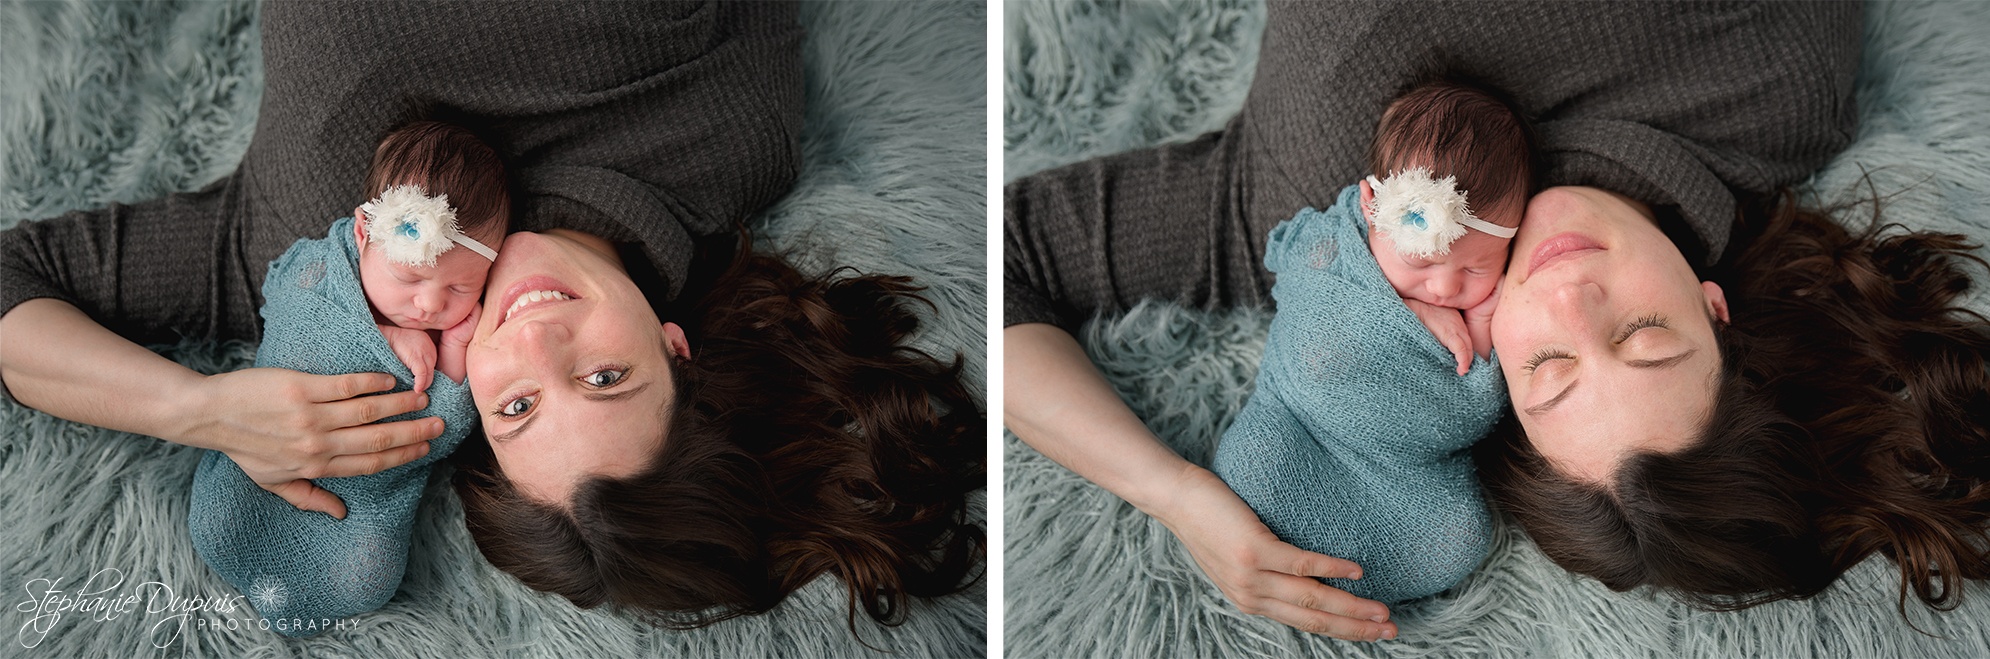 Kaitlin Belanger 15 - Portfolio: Scarlett - Infant Session